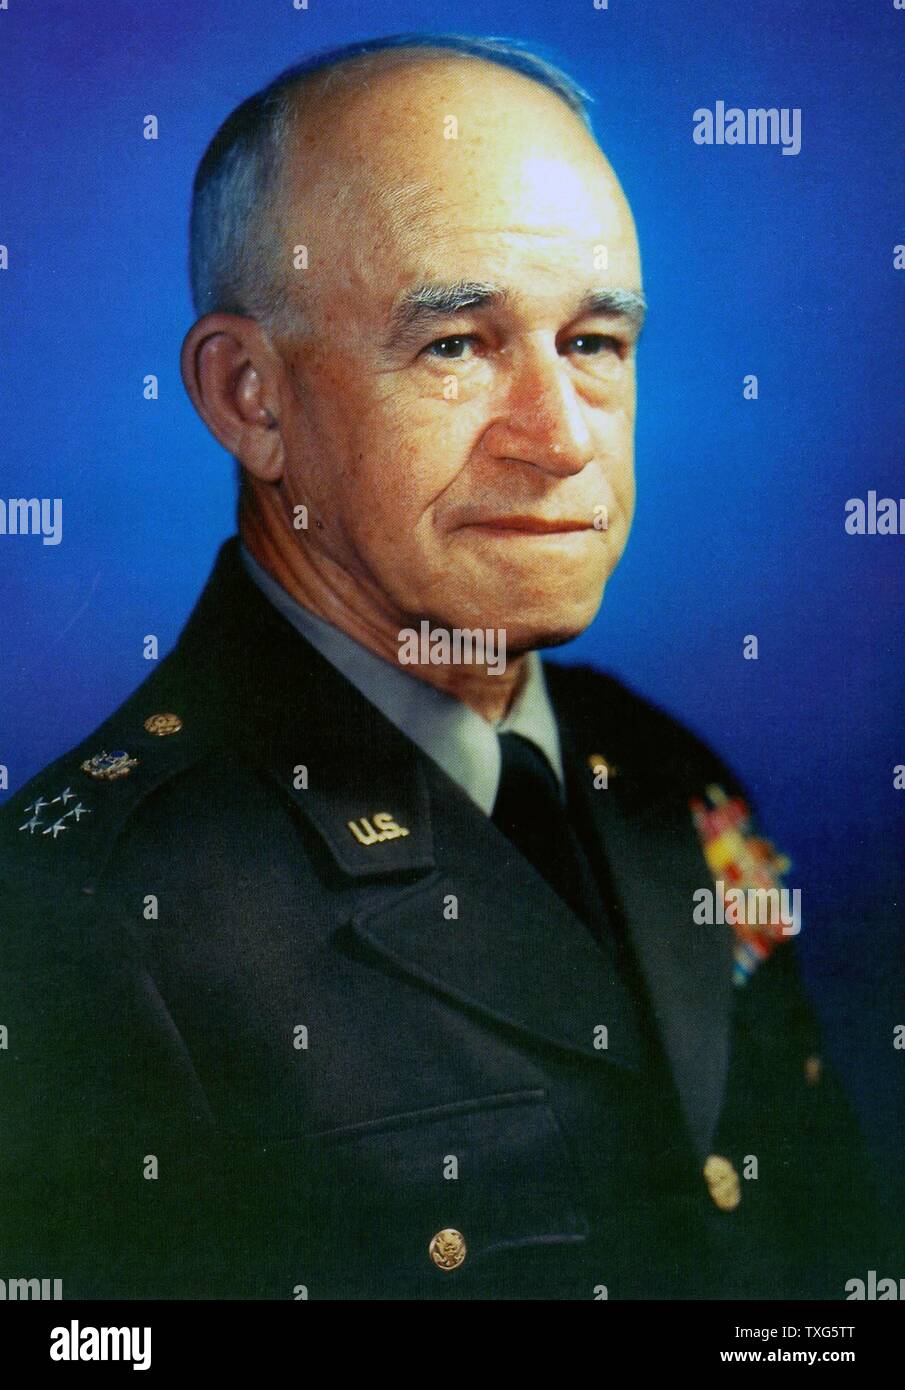 Omar Nelson Bradley, amerikanischer General, U.S. Army Field Commander sowohl in Nordafrika und Europa während des Zweiten Weltkriegs. Erste Vorsitzende des Generalstabs von Präsident Truman ernannt. Stockfoto